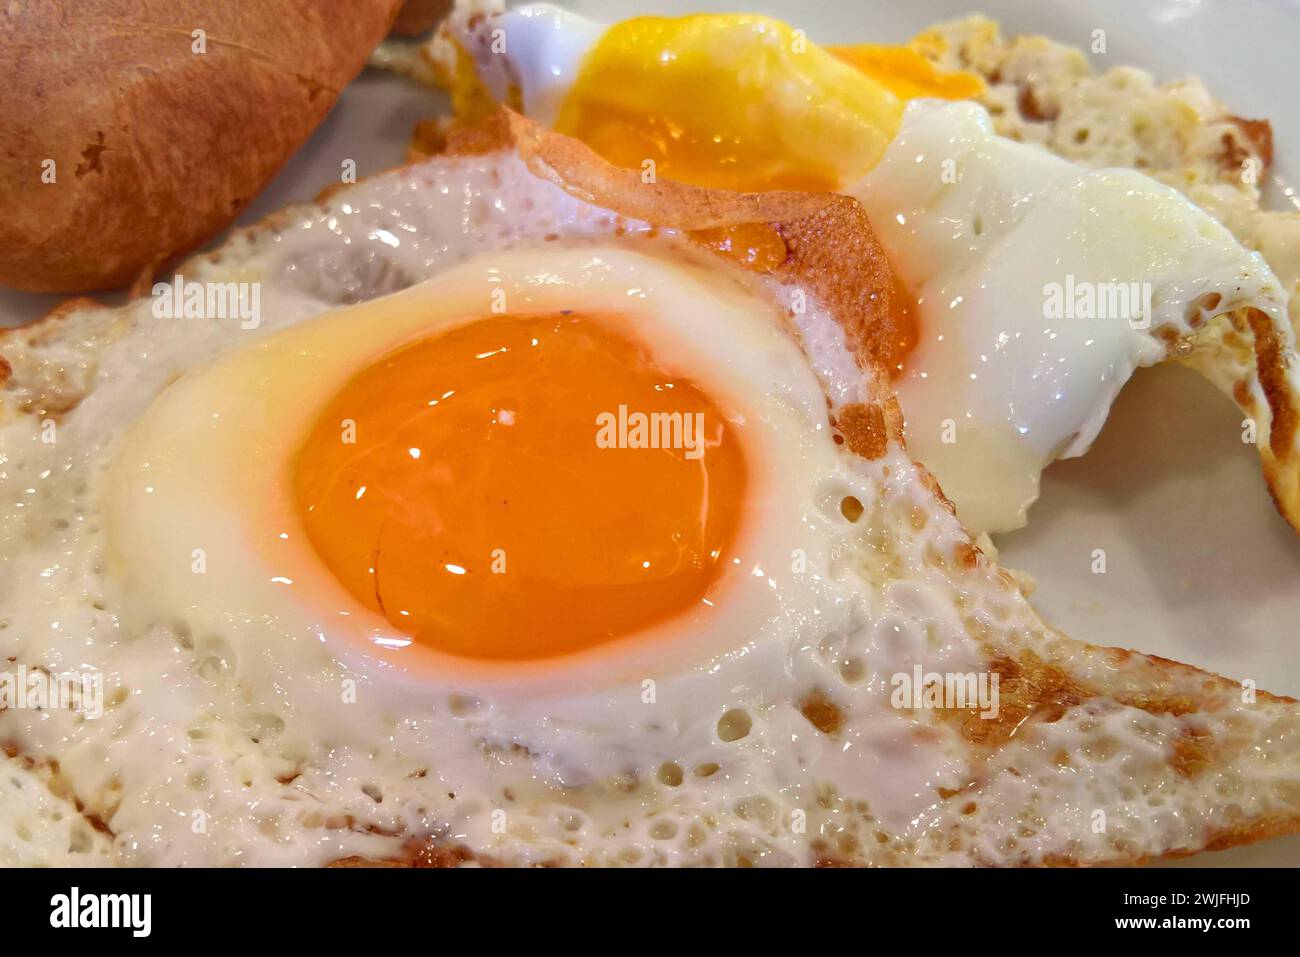 Ei bzw Eier. Foto: Spiegelei, Spiegeleier *** Egg or eggs photo fried egg, fried eggs Stock Photo